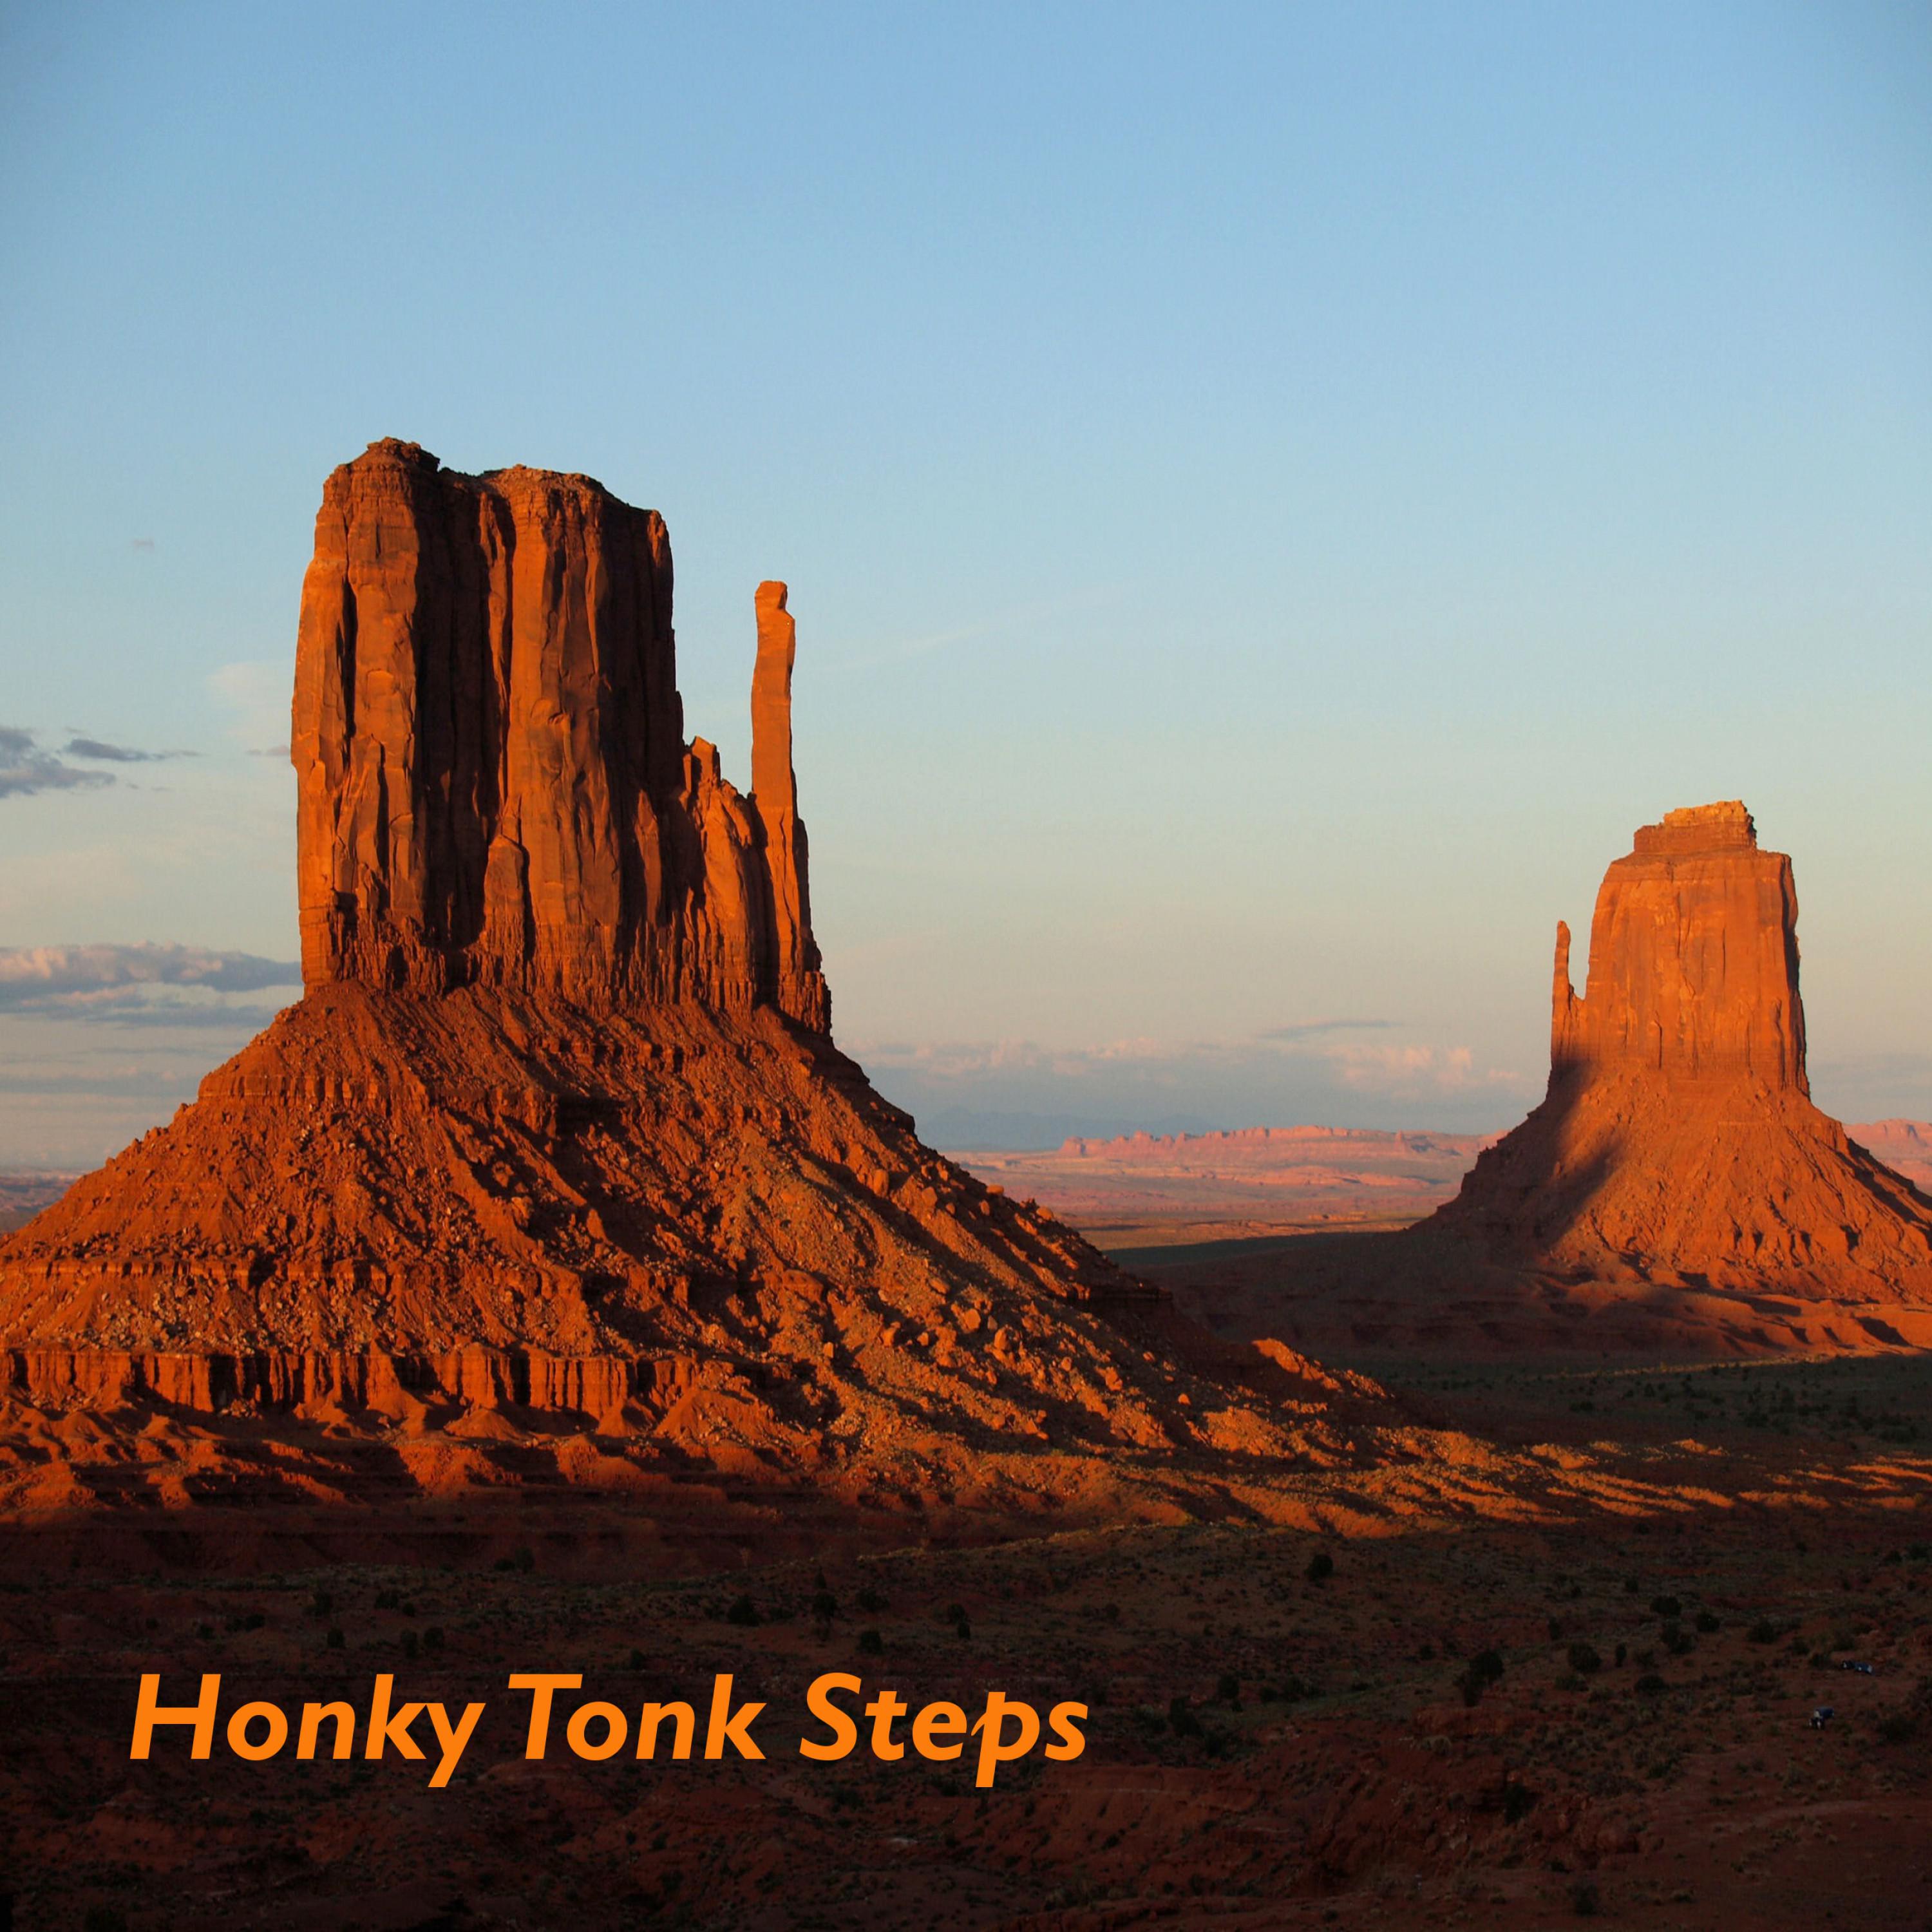 Honky Tonk Steps